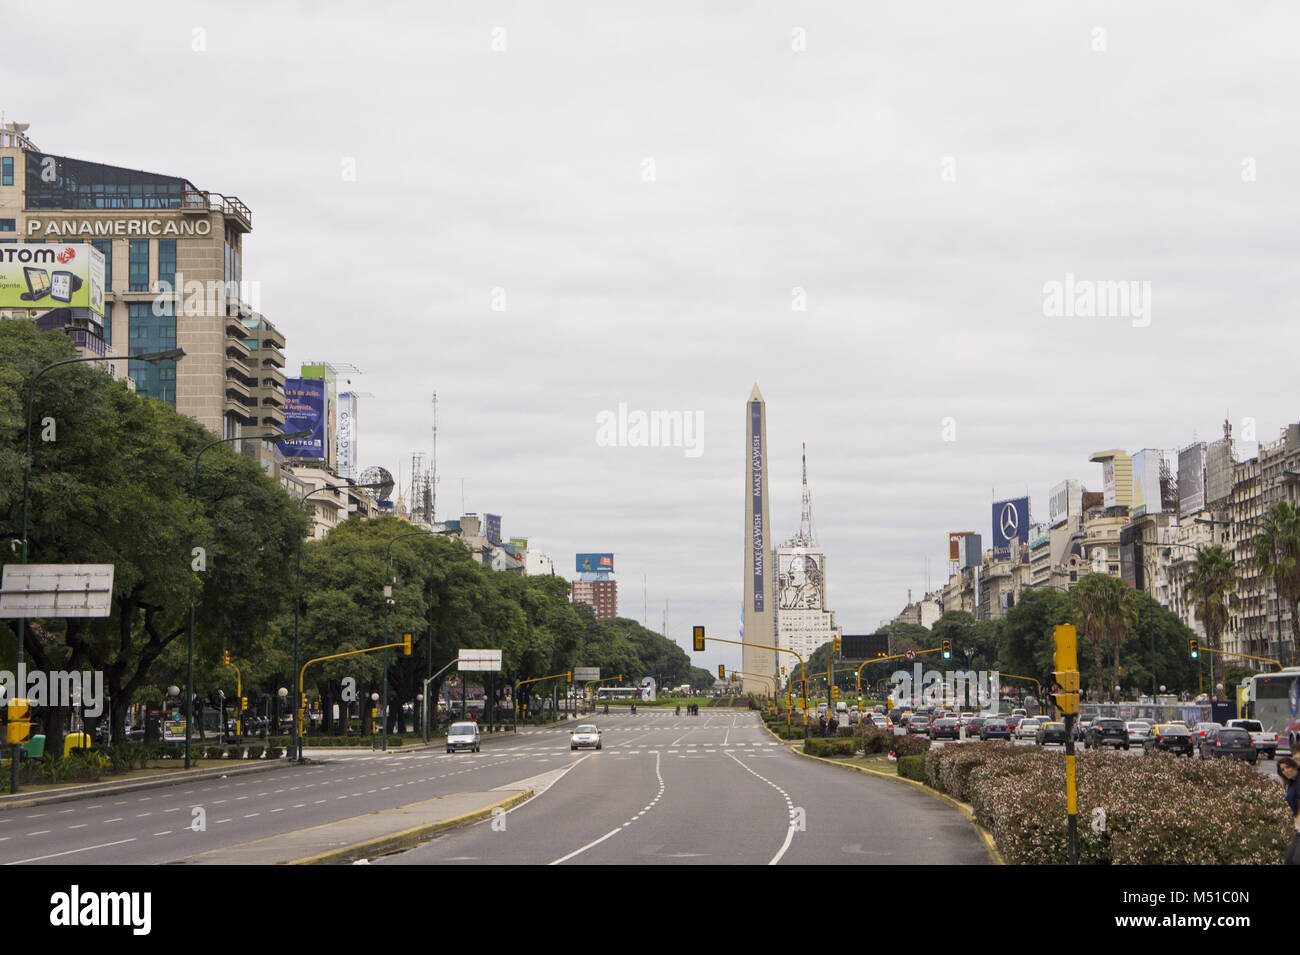 Argentina, Buenos Aires, 9 de julio Avenue Foto de stock